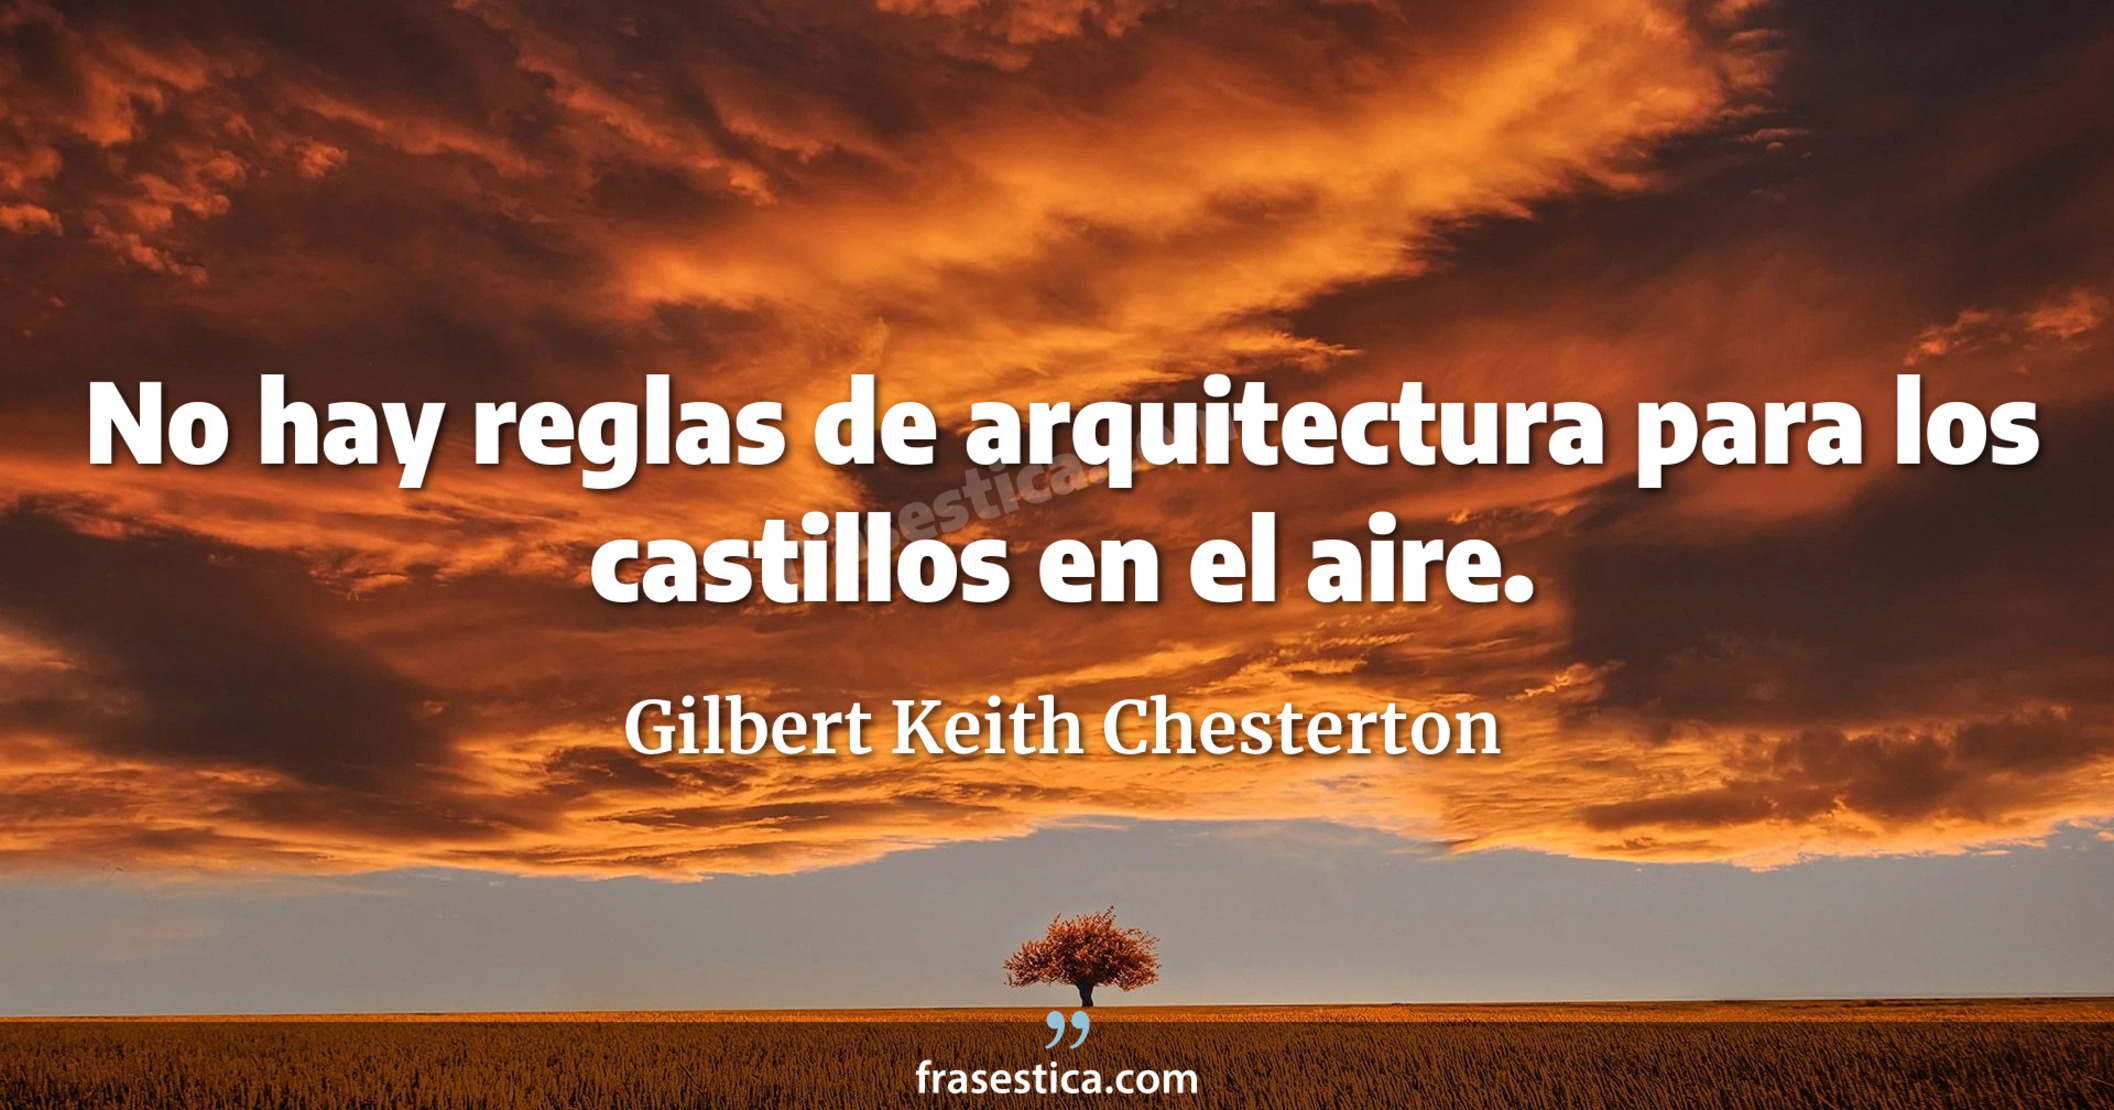 No hay reglas de arquitectura para los castillos en el aire. - Gilbert Keith Chesterton